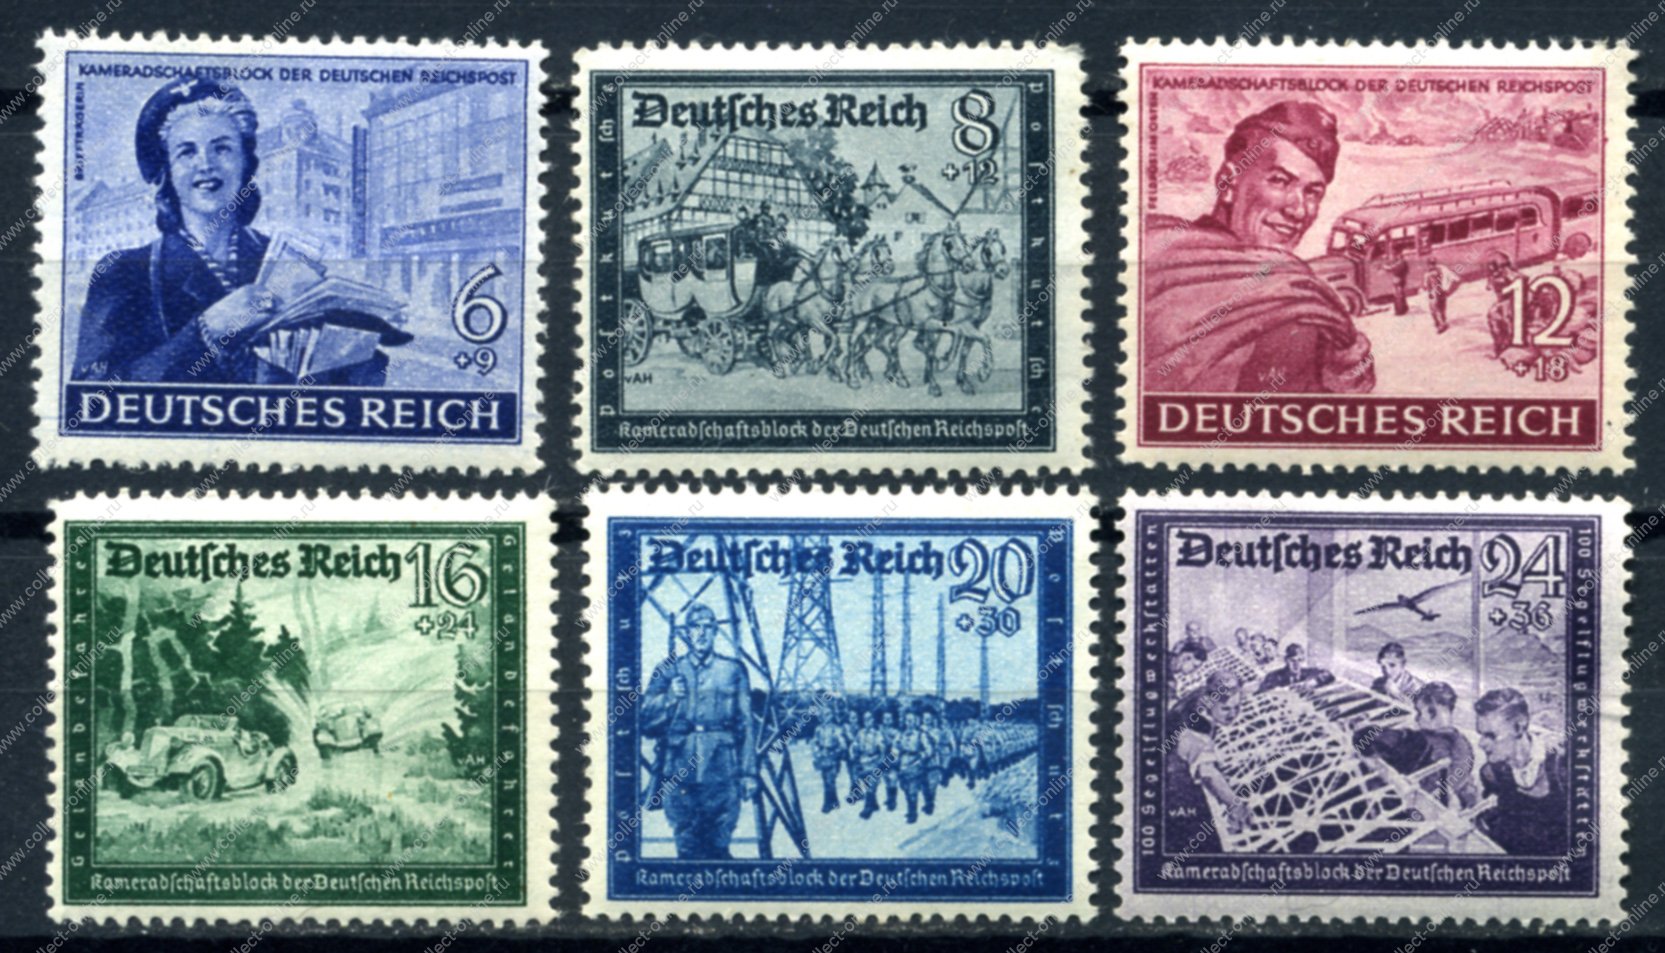 Купить марки германии. Почтовые марки третьего рейха Grossdeutsches Reich. Почтовая марка Deutsches Reich 3. Почтовая марка Deutsches Reich 20. Марки Германии 1944г.